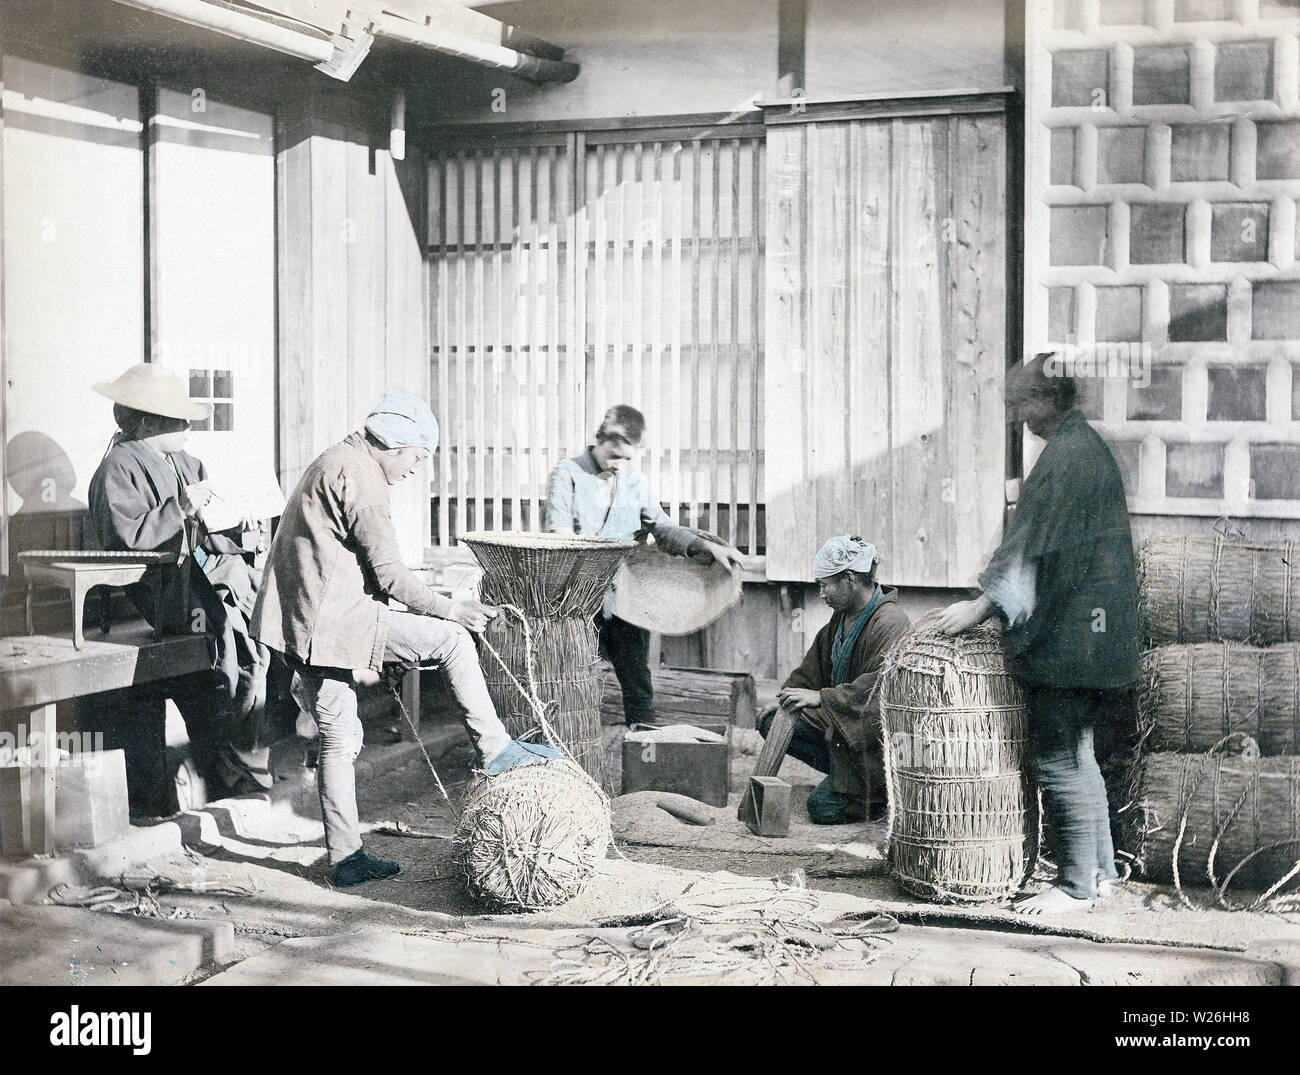 [1880s Japan - Verpackung Reis] - zwei Männer im Vordergrund sind Verpackung Reis im Stroh Taschen, während der Mann auf der linken Seite die Datensätze ist. Eine japanische Soroban (Abacus) liegt auf dem Tisch neben ihm. In der Rückseite ein Junge ist das Ausfüllen eines noch offenen Tasche mit Reis. Ein masu Holz- messbox auf dem Boden liegt. Masu existiert in vielen Größen von 0,9 bis 18 Liter. 19 Vintage albumen Foto. Stockfoto